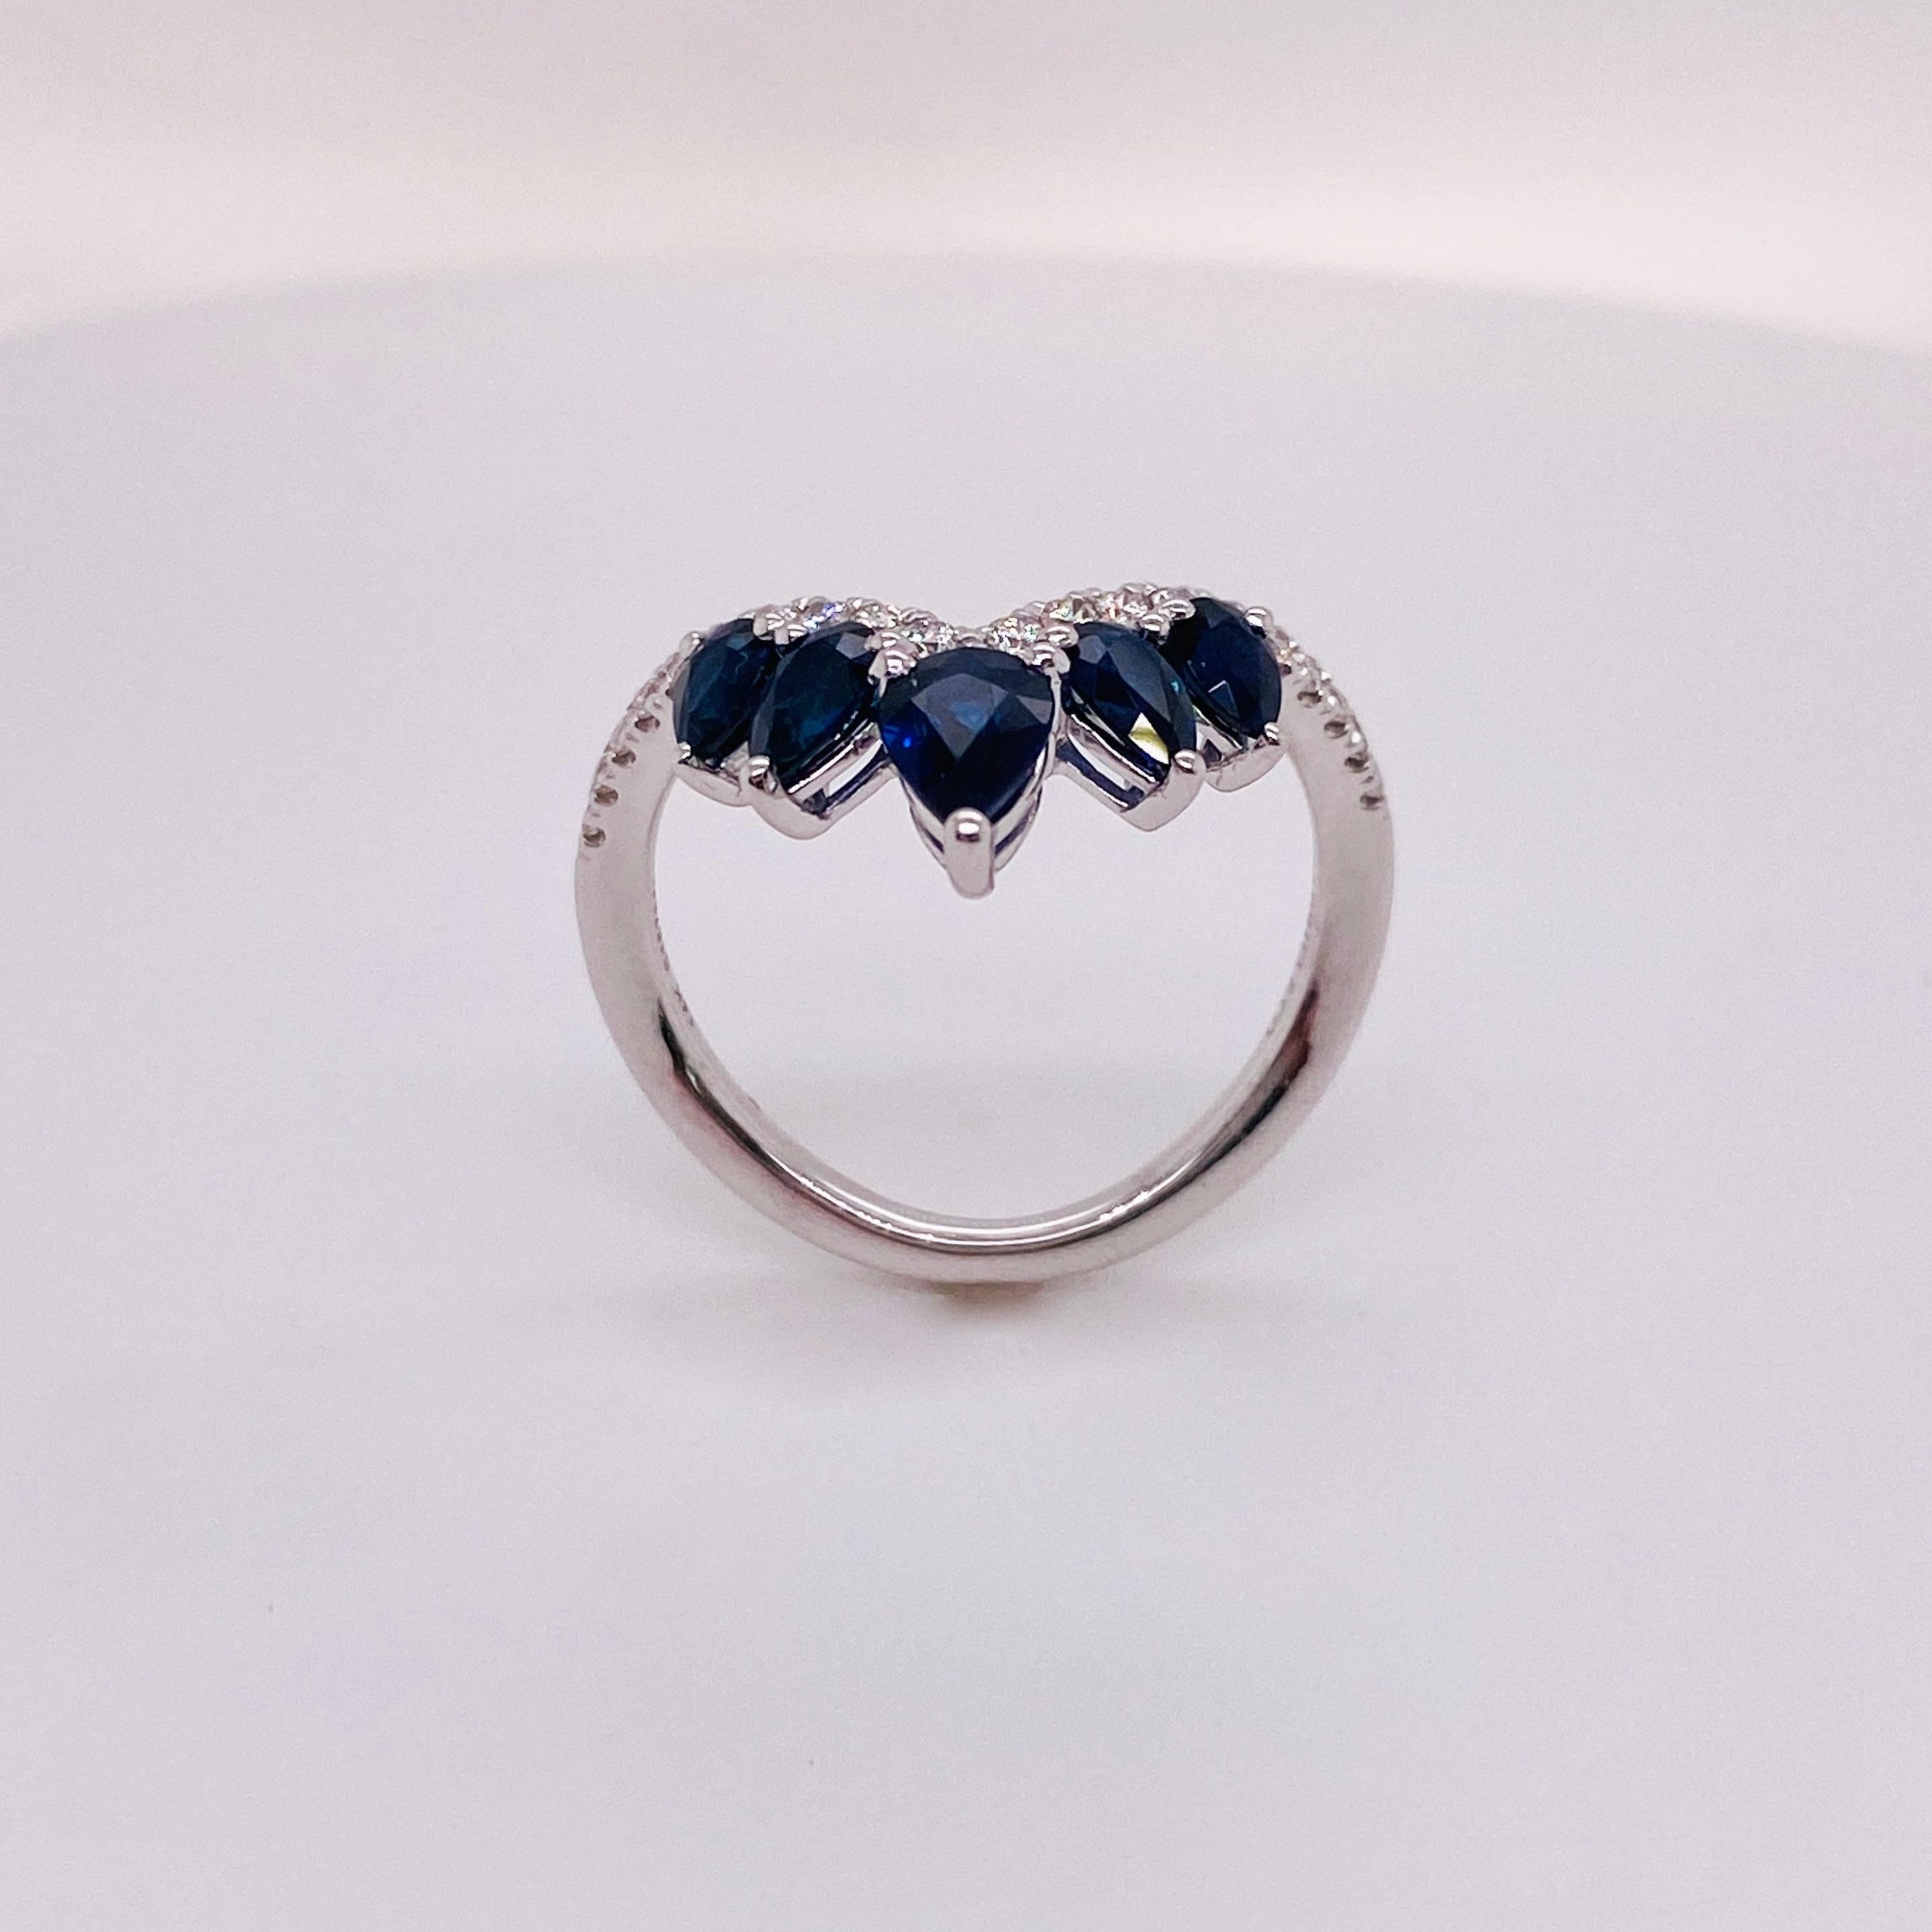 For Sale:  Rich Royal Blue Sapphire & Diamond Chevron Crown Tiara Ring 14KW LR52404W45SA LV 4